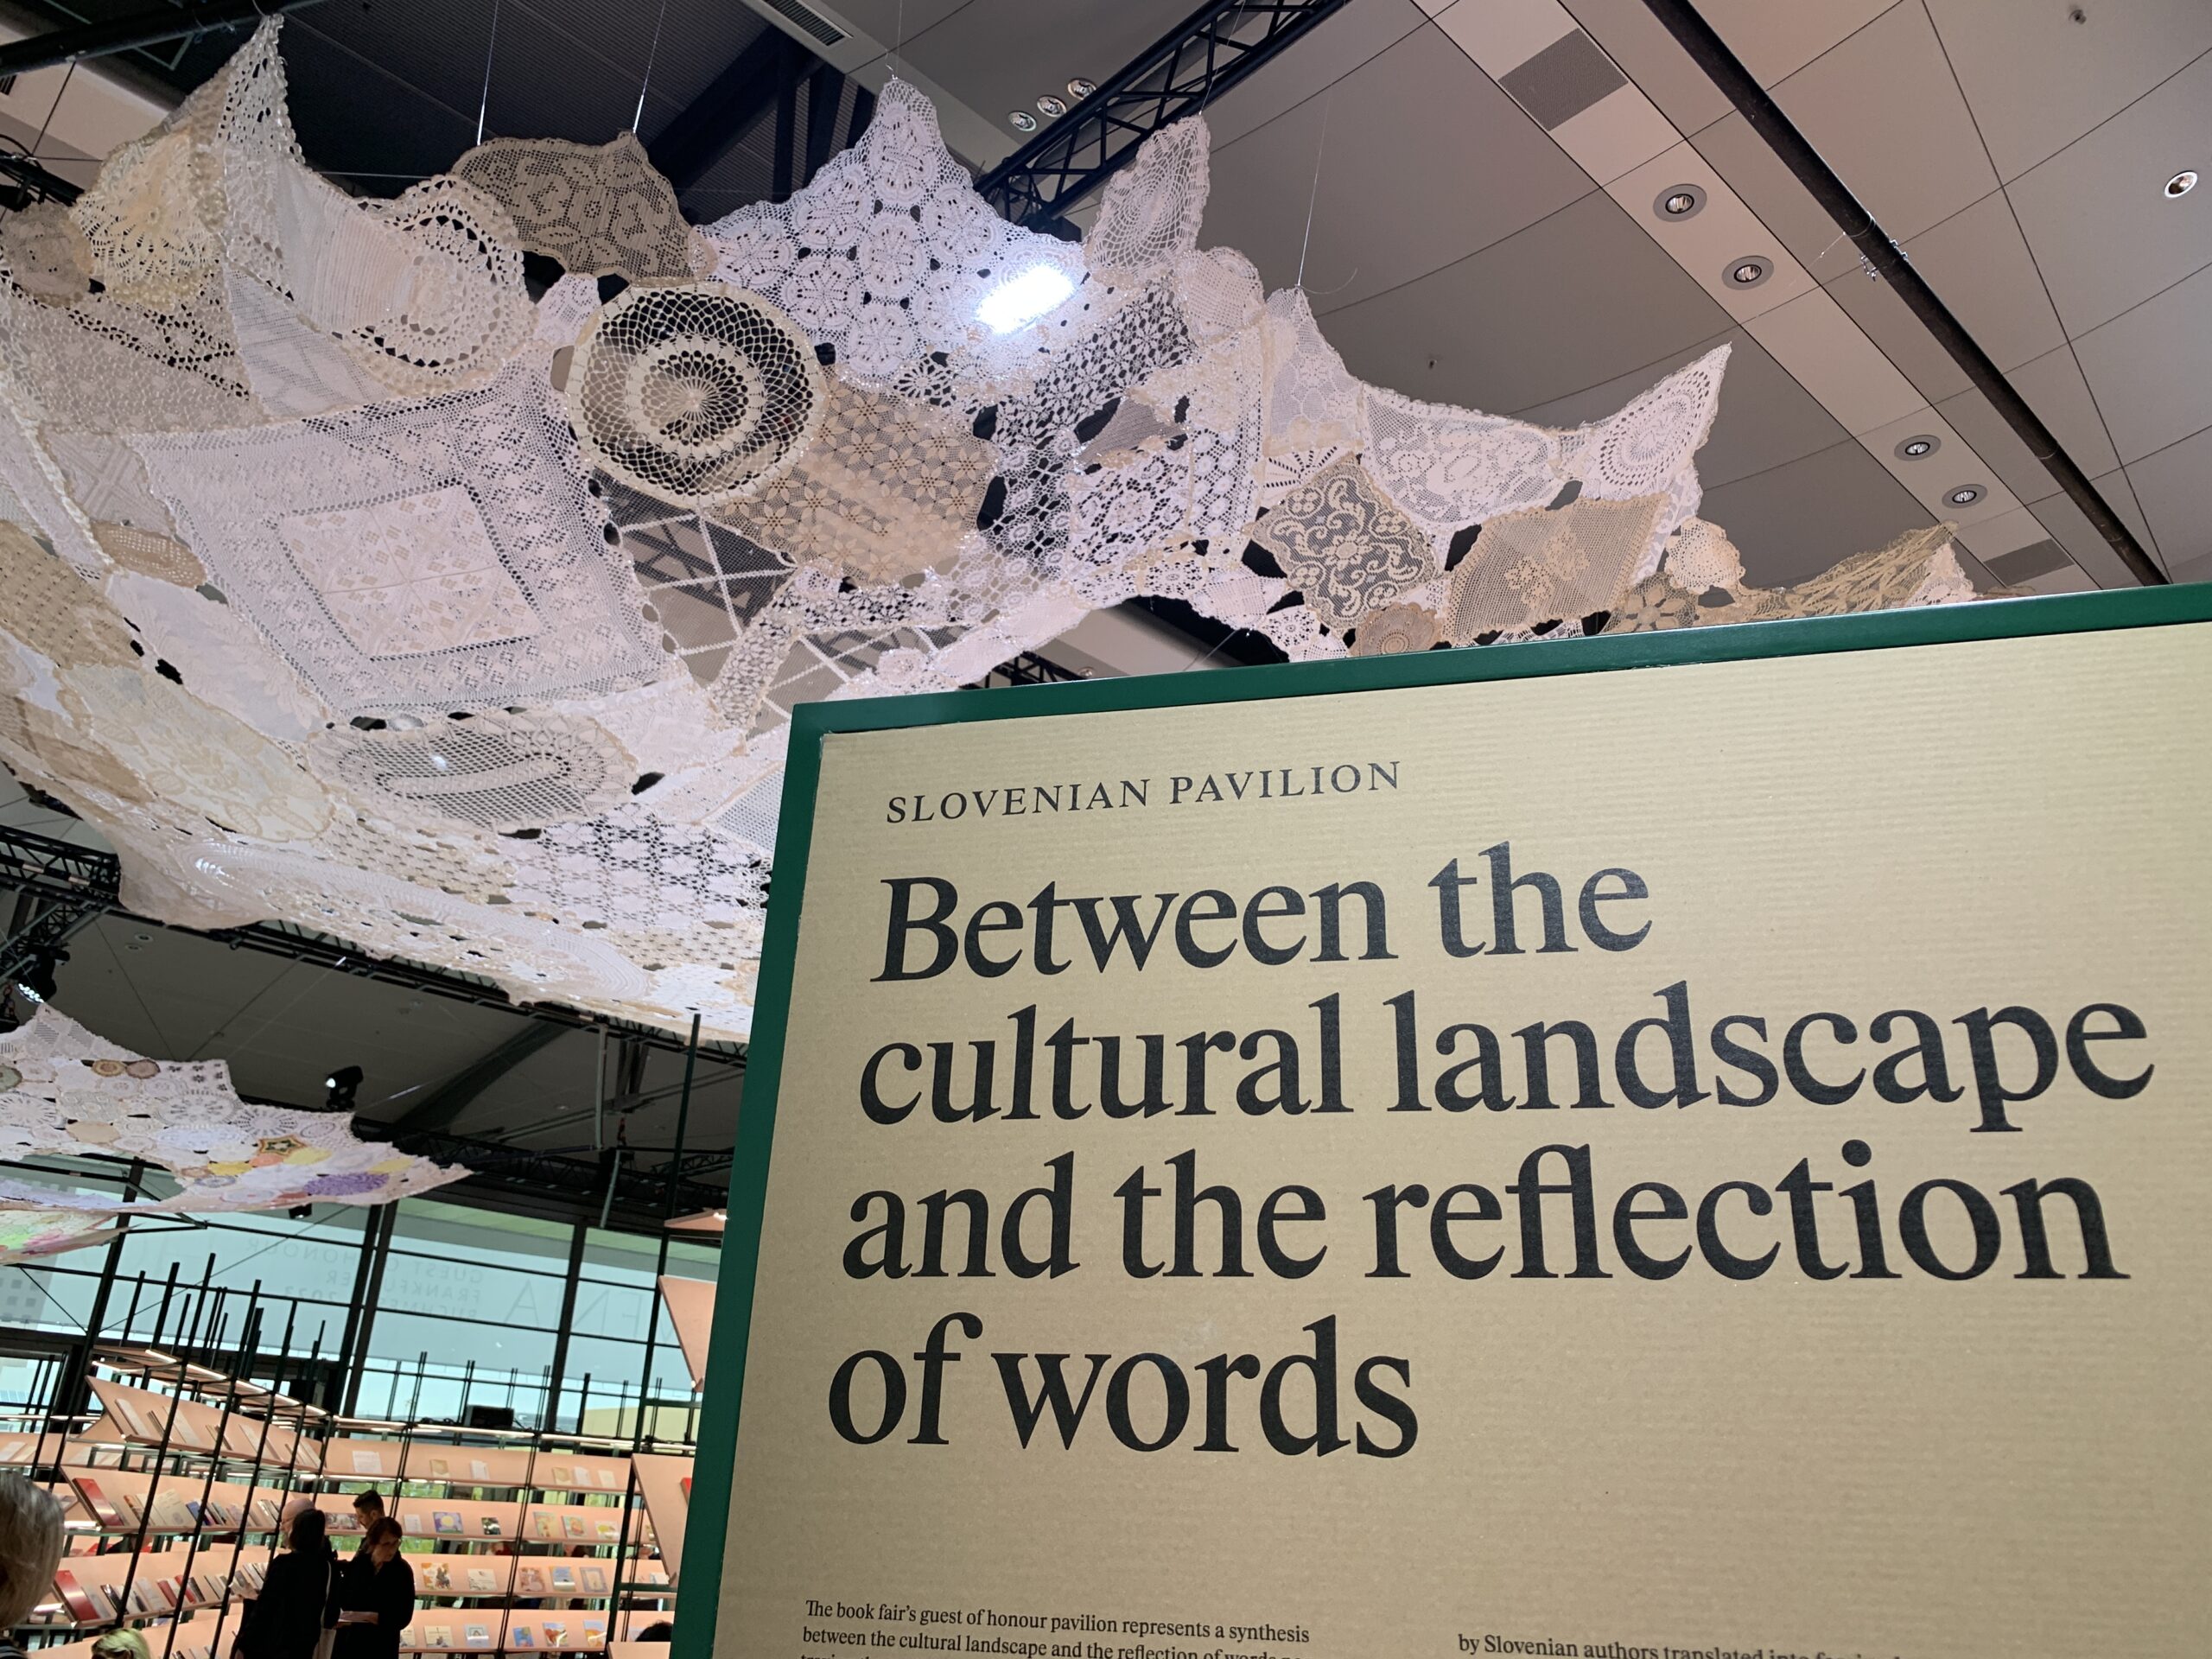 Frankfurter Buchmesse 2023: Ausschnitt vom Gastlandauftritt Slovenien mit dem Thema "Waben der Worte". Die Worte "Between the cultural landscape and the reflection of words" sind zu lesen.